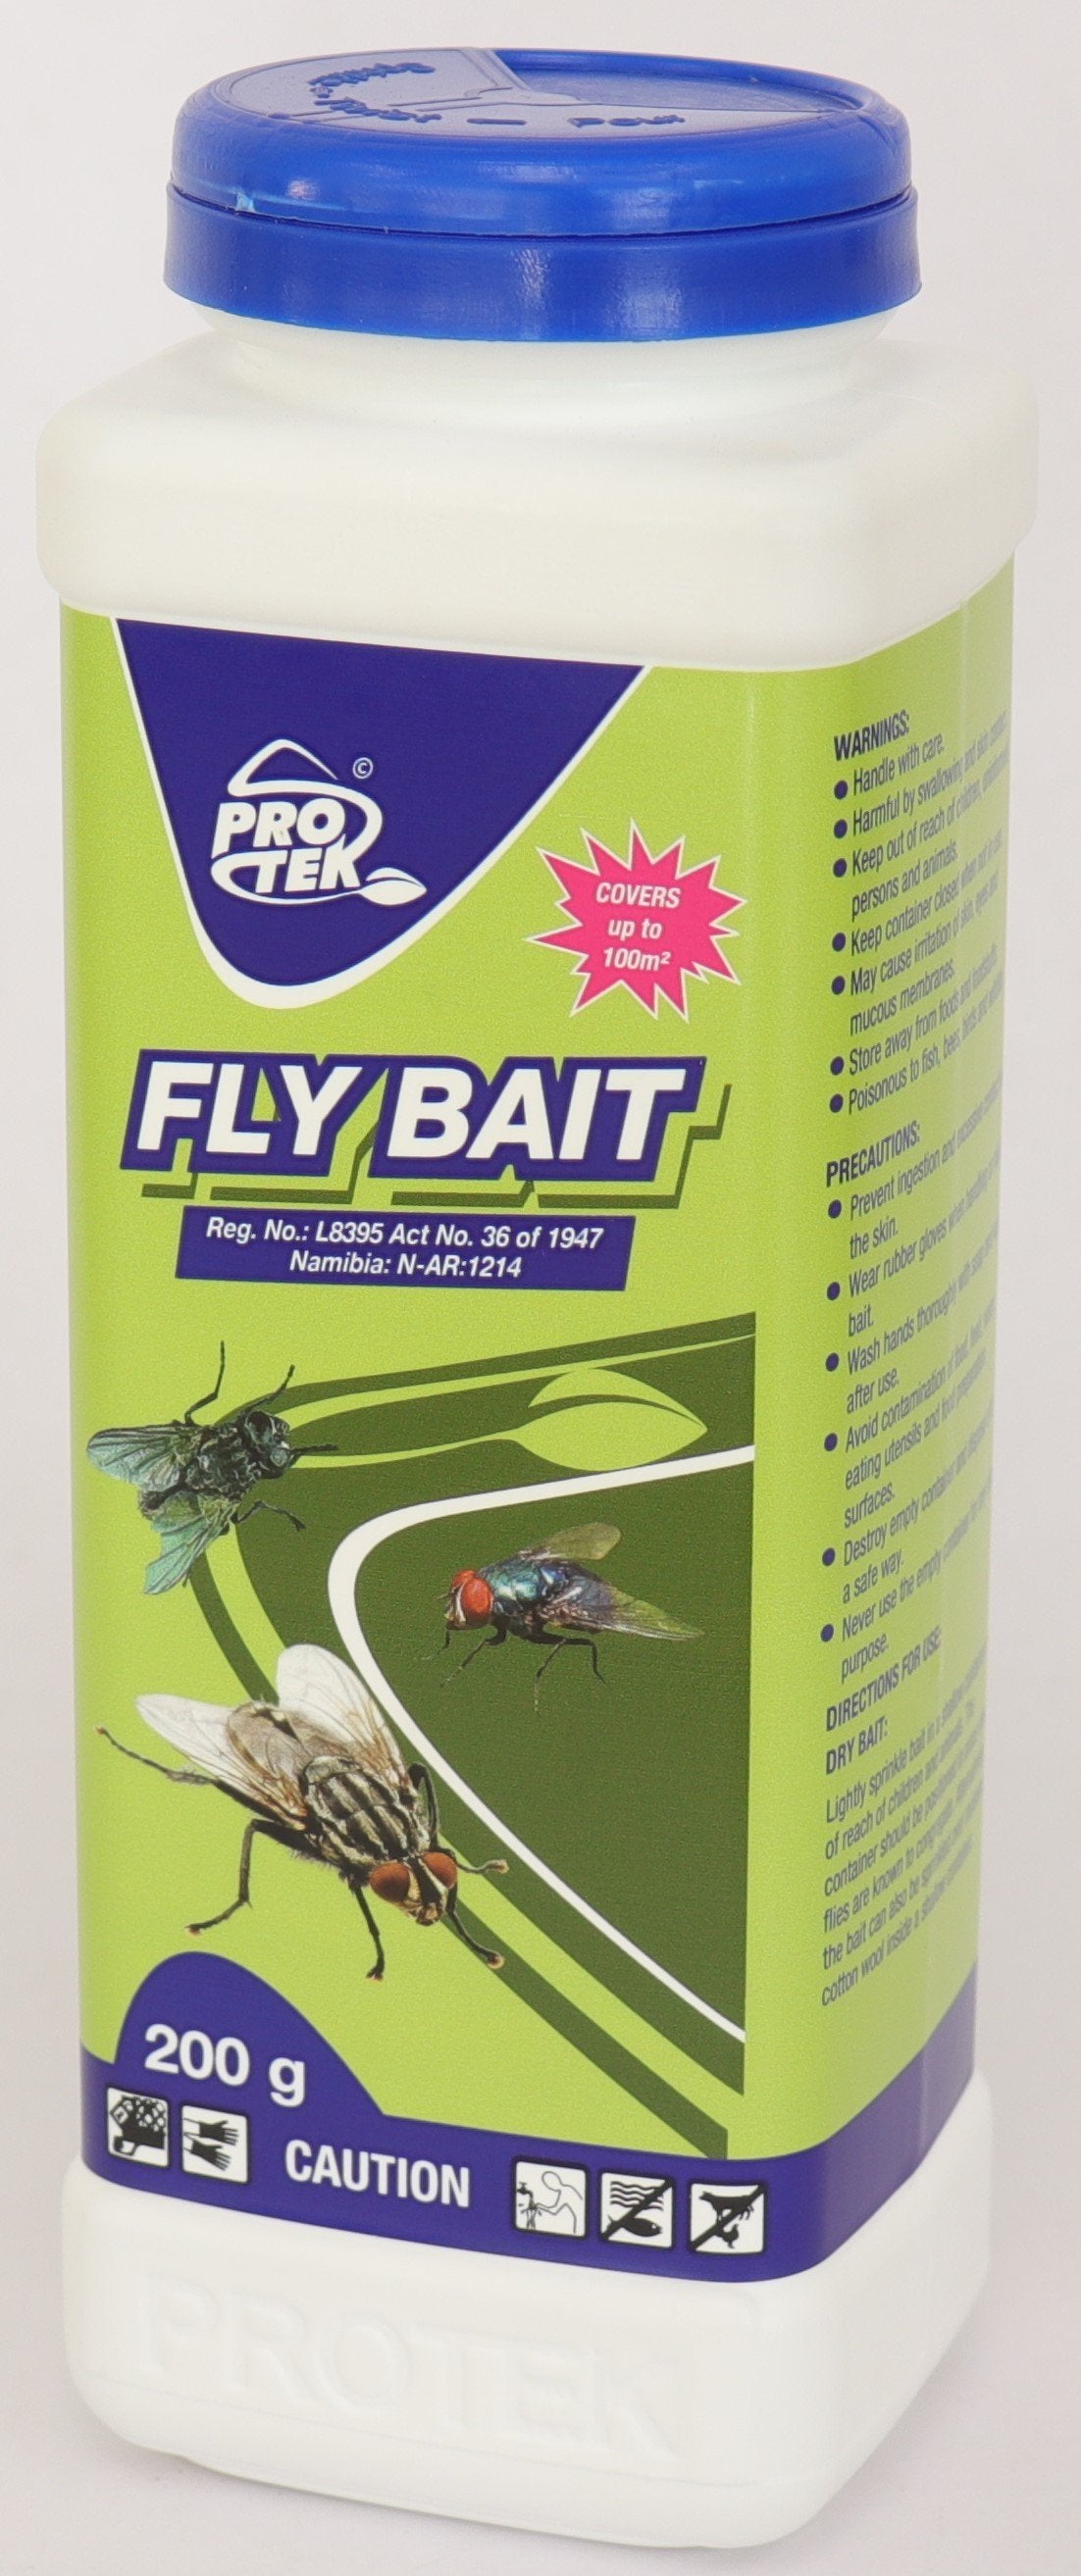 Protek Fly Bait 200g